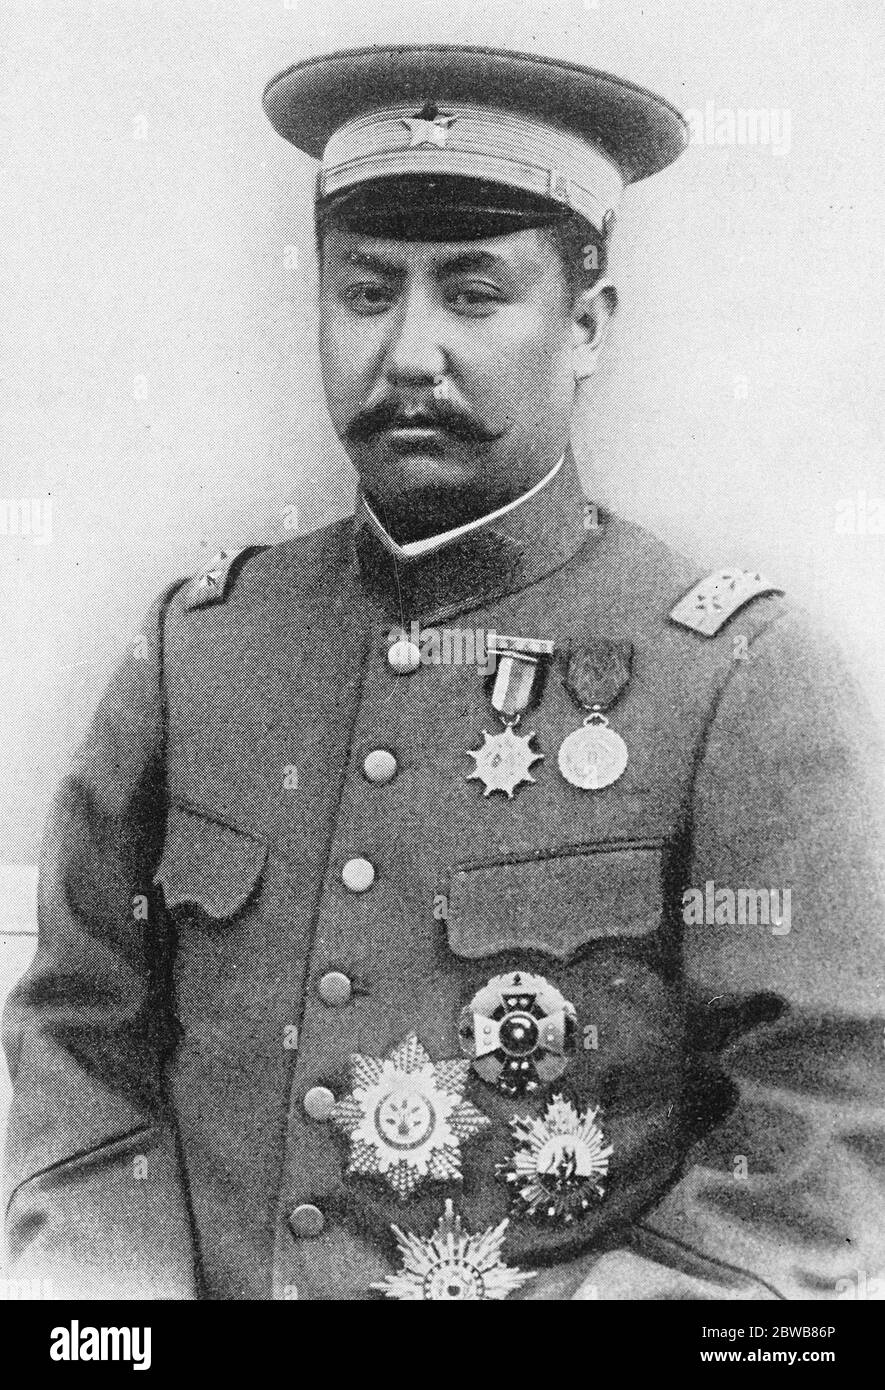 Général Yen HSI - Shan , gouverneur militaire de la province de Shansi et créateur d'un nouveau programme d'éducation populaire en Chine . 25 janvier 1925 Banque D'Images